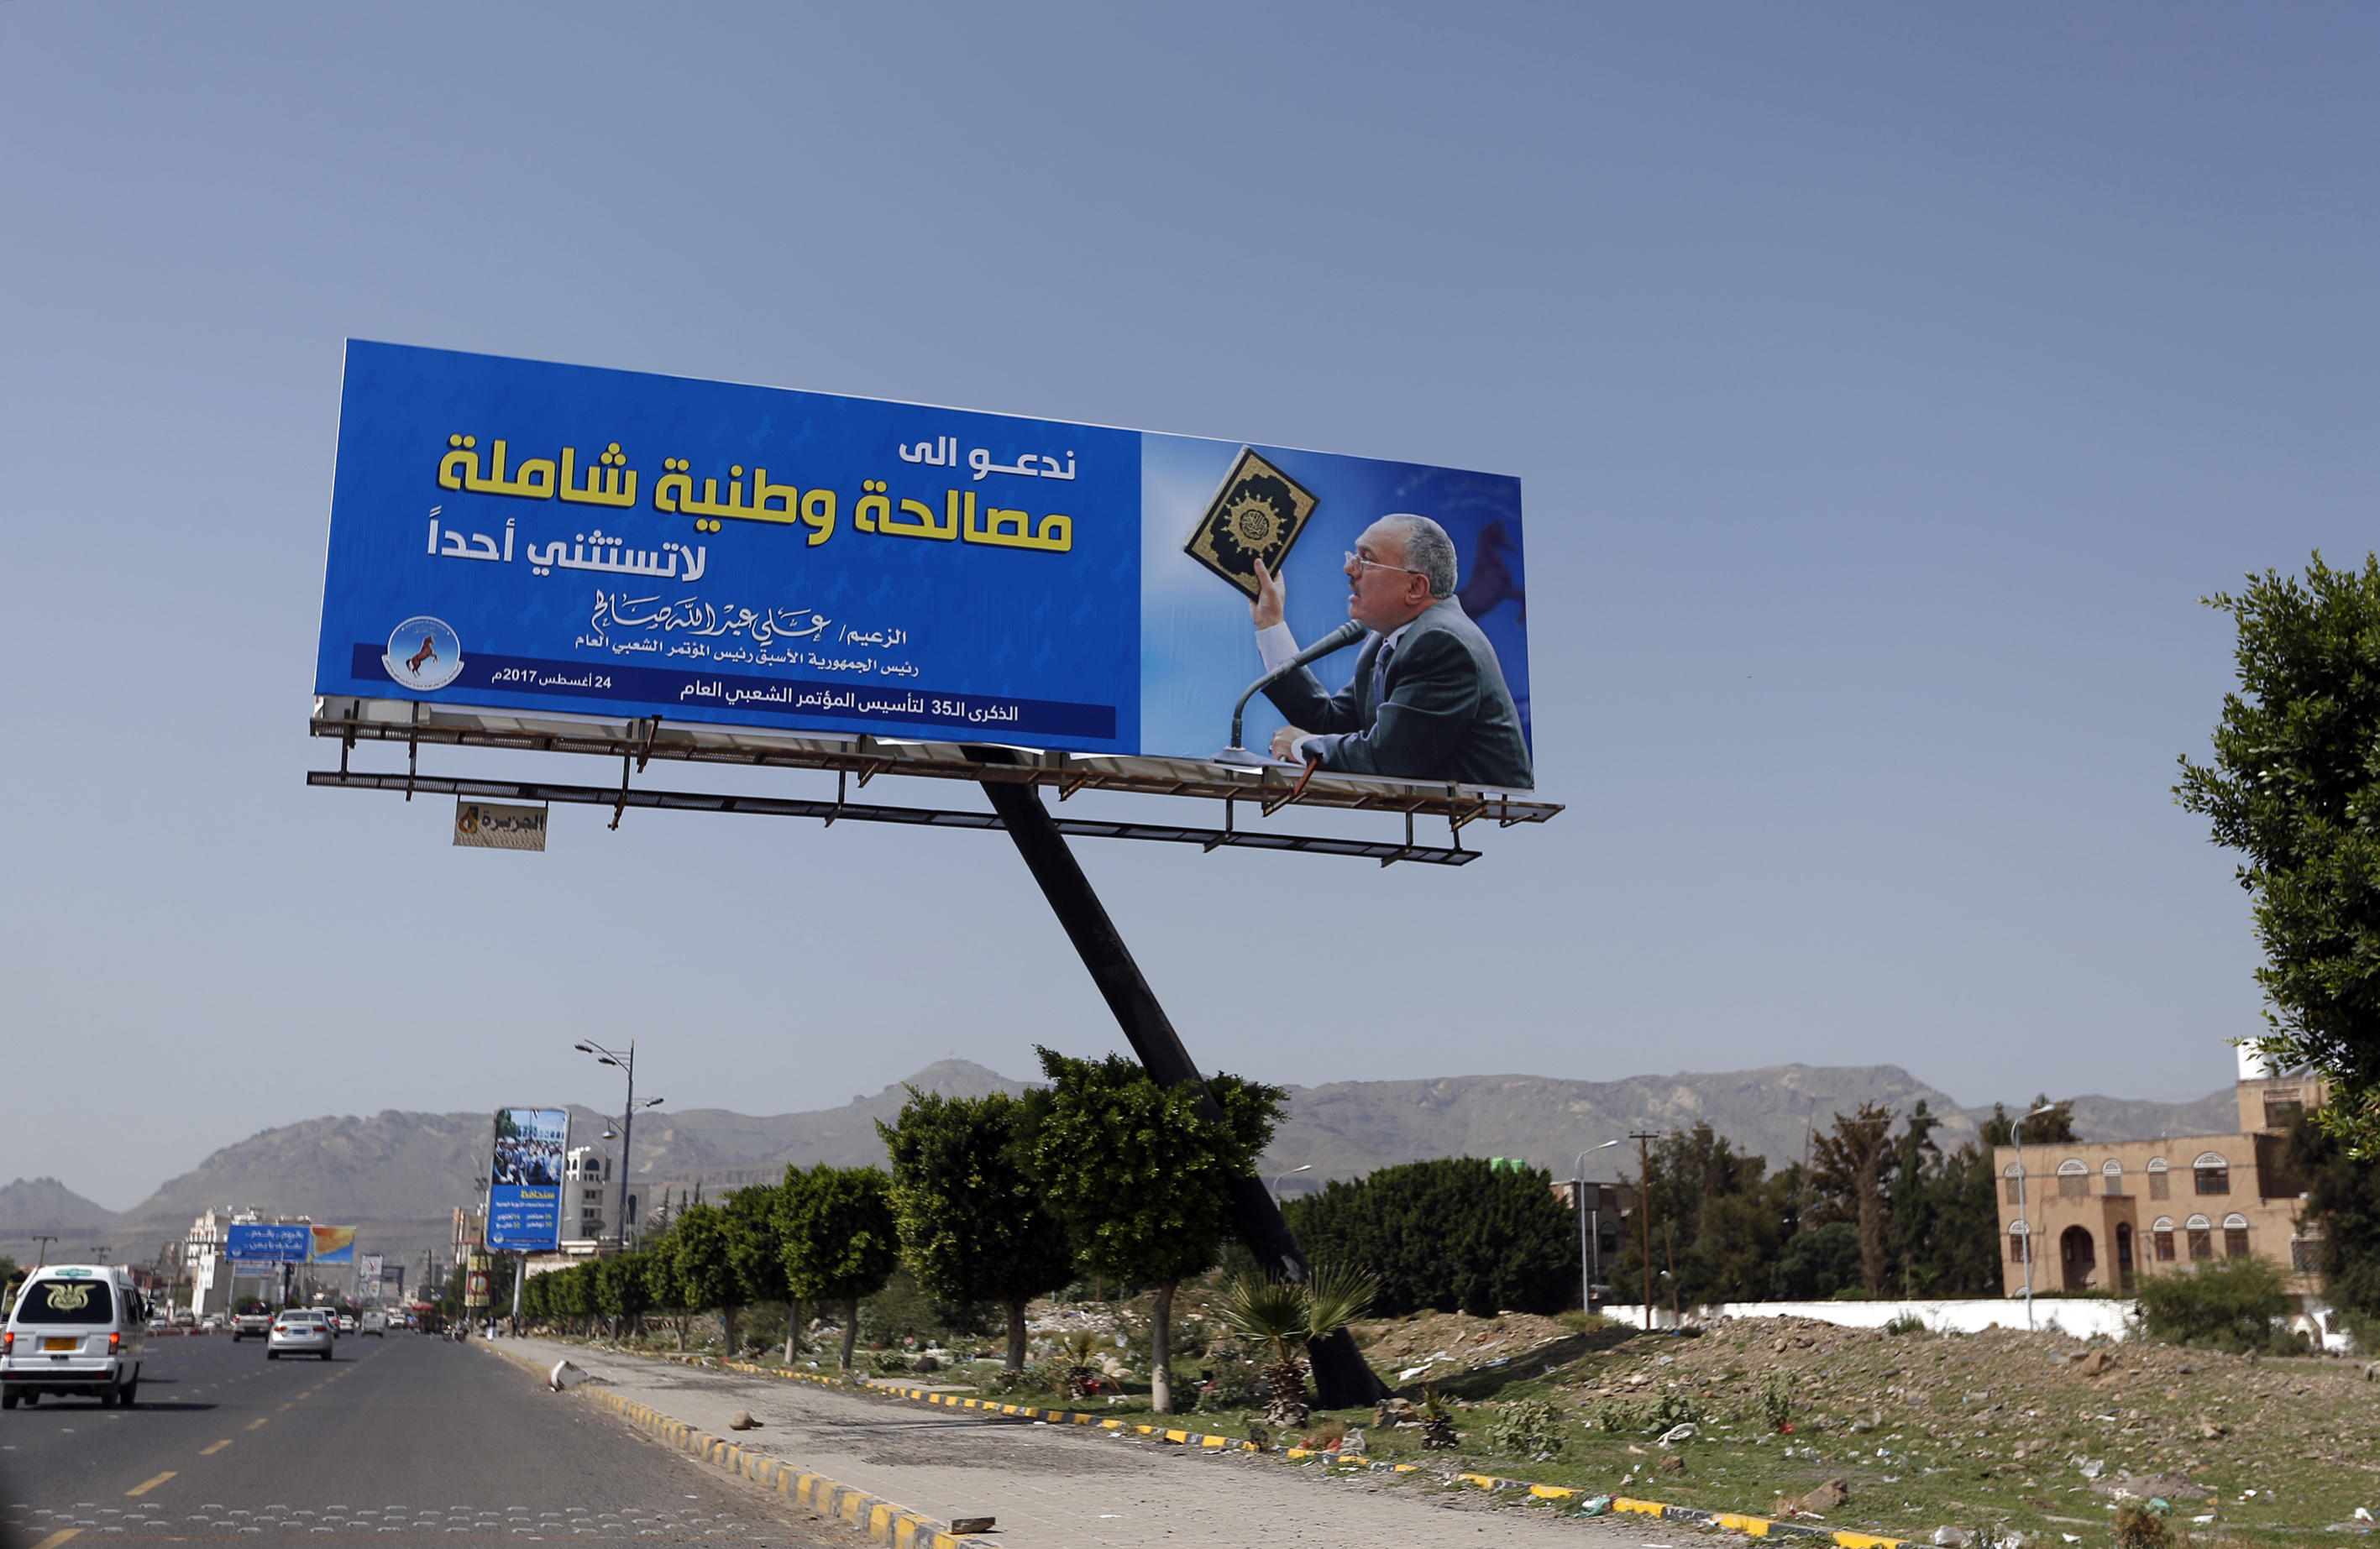 لافتات للرئيس اليمنى المخلوع تدعو لمصالحة وطنية شاملة